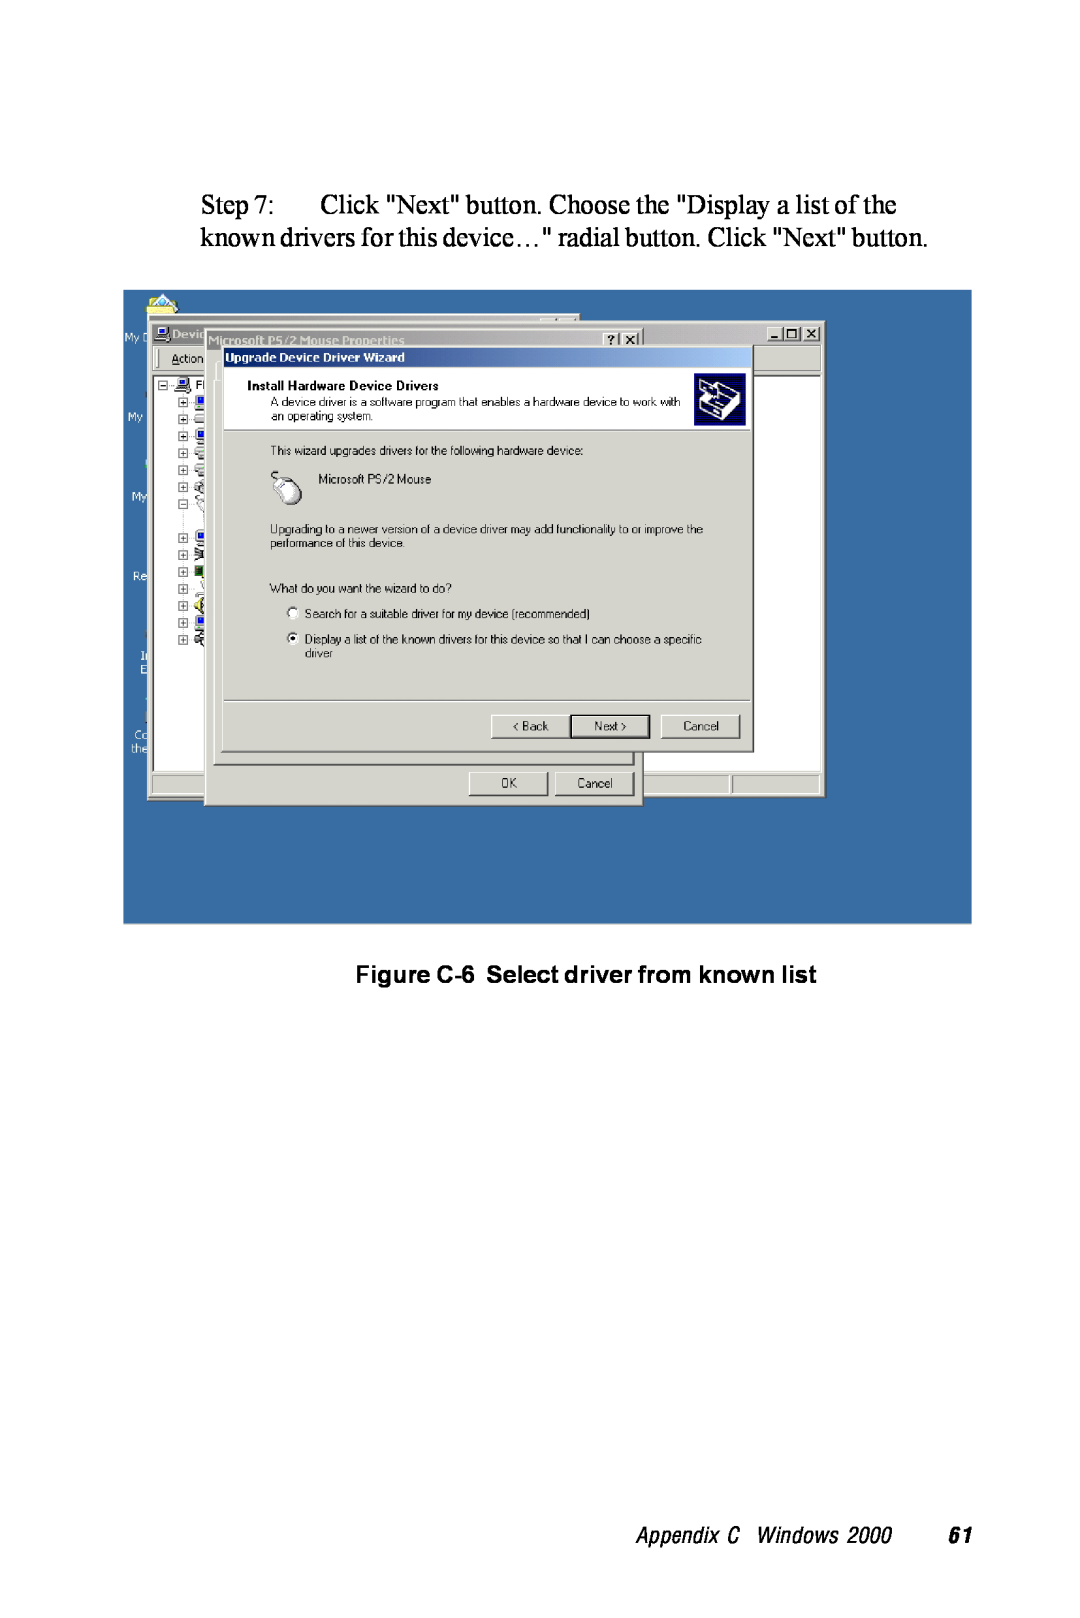 Advantech TPC-1260 manual Figure C-6 Select driver from known list, Appendix C Windows 